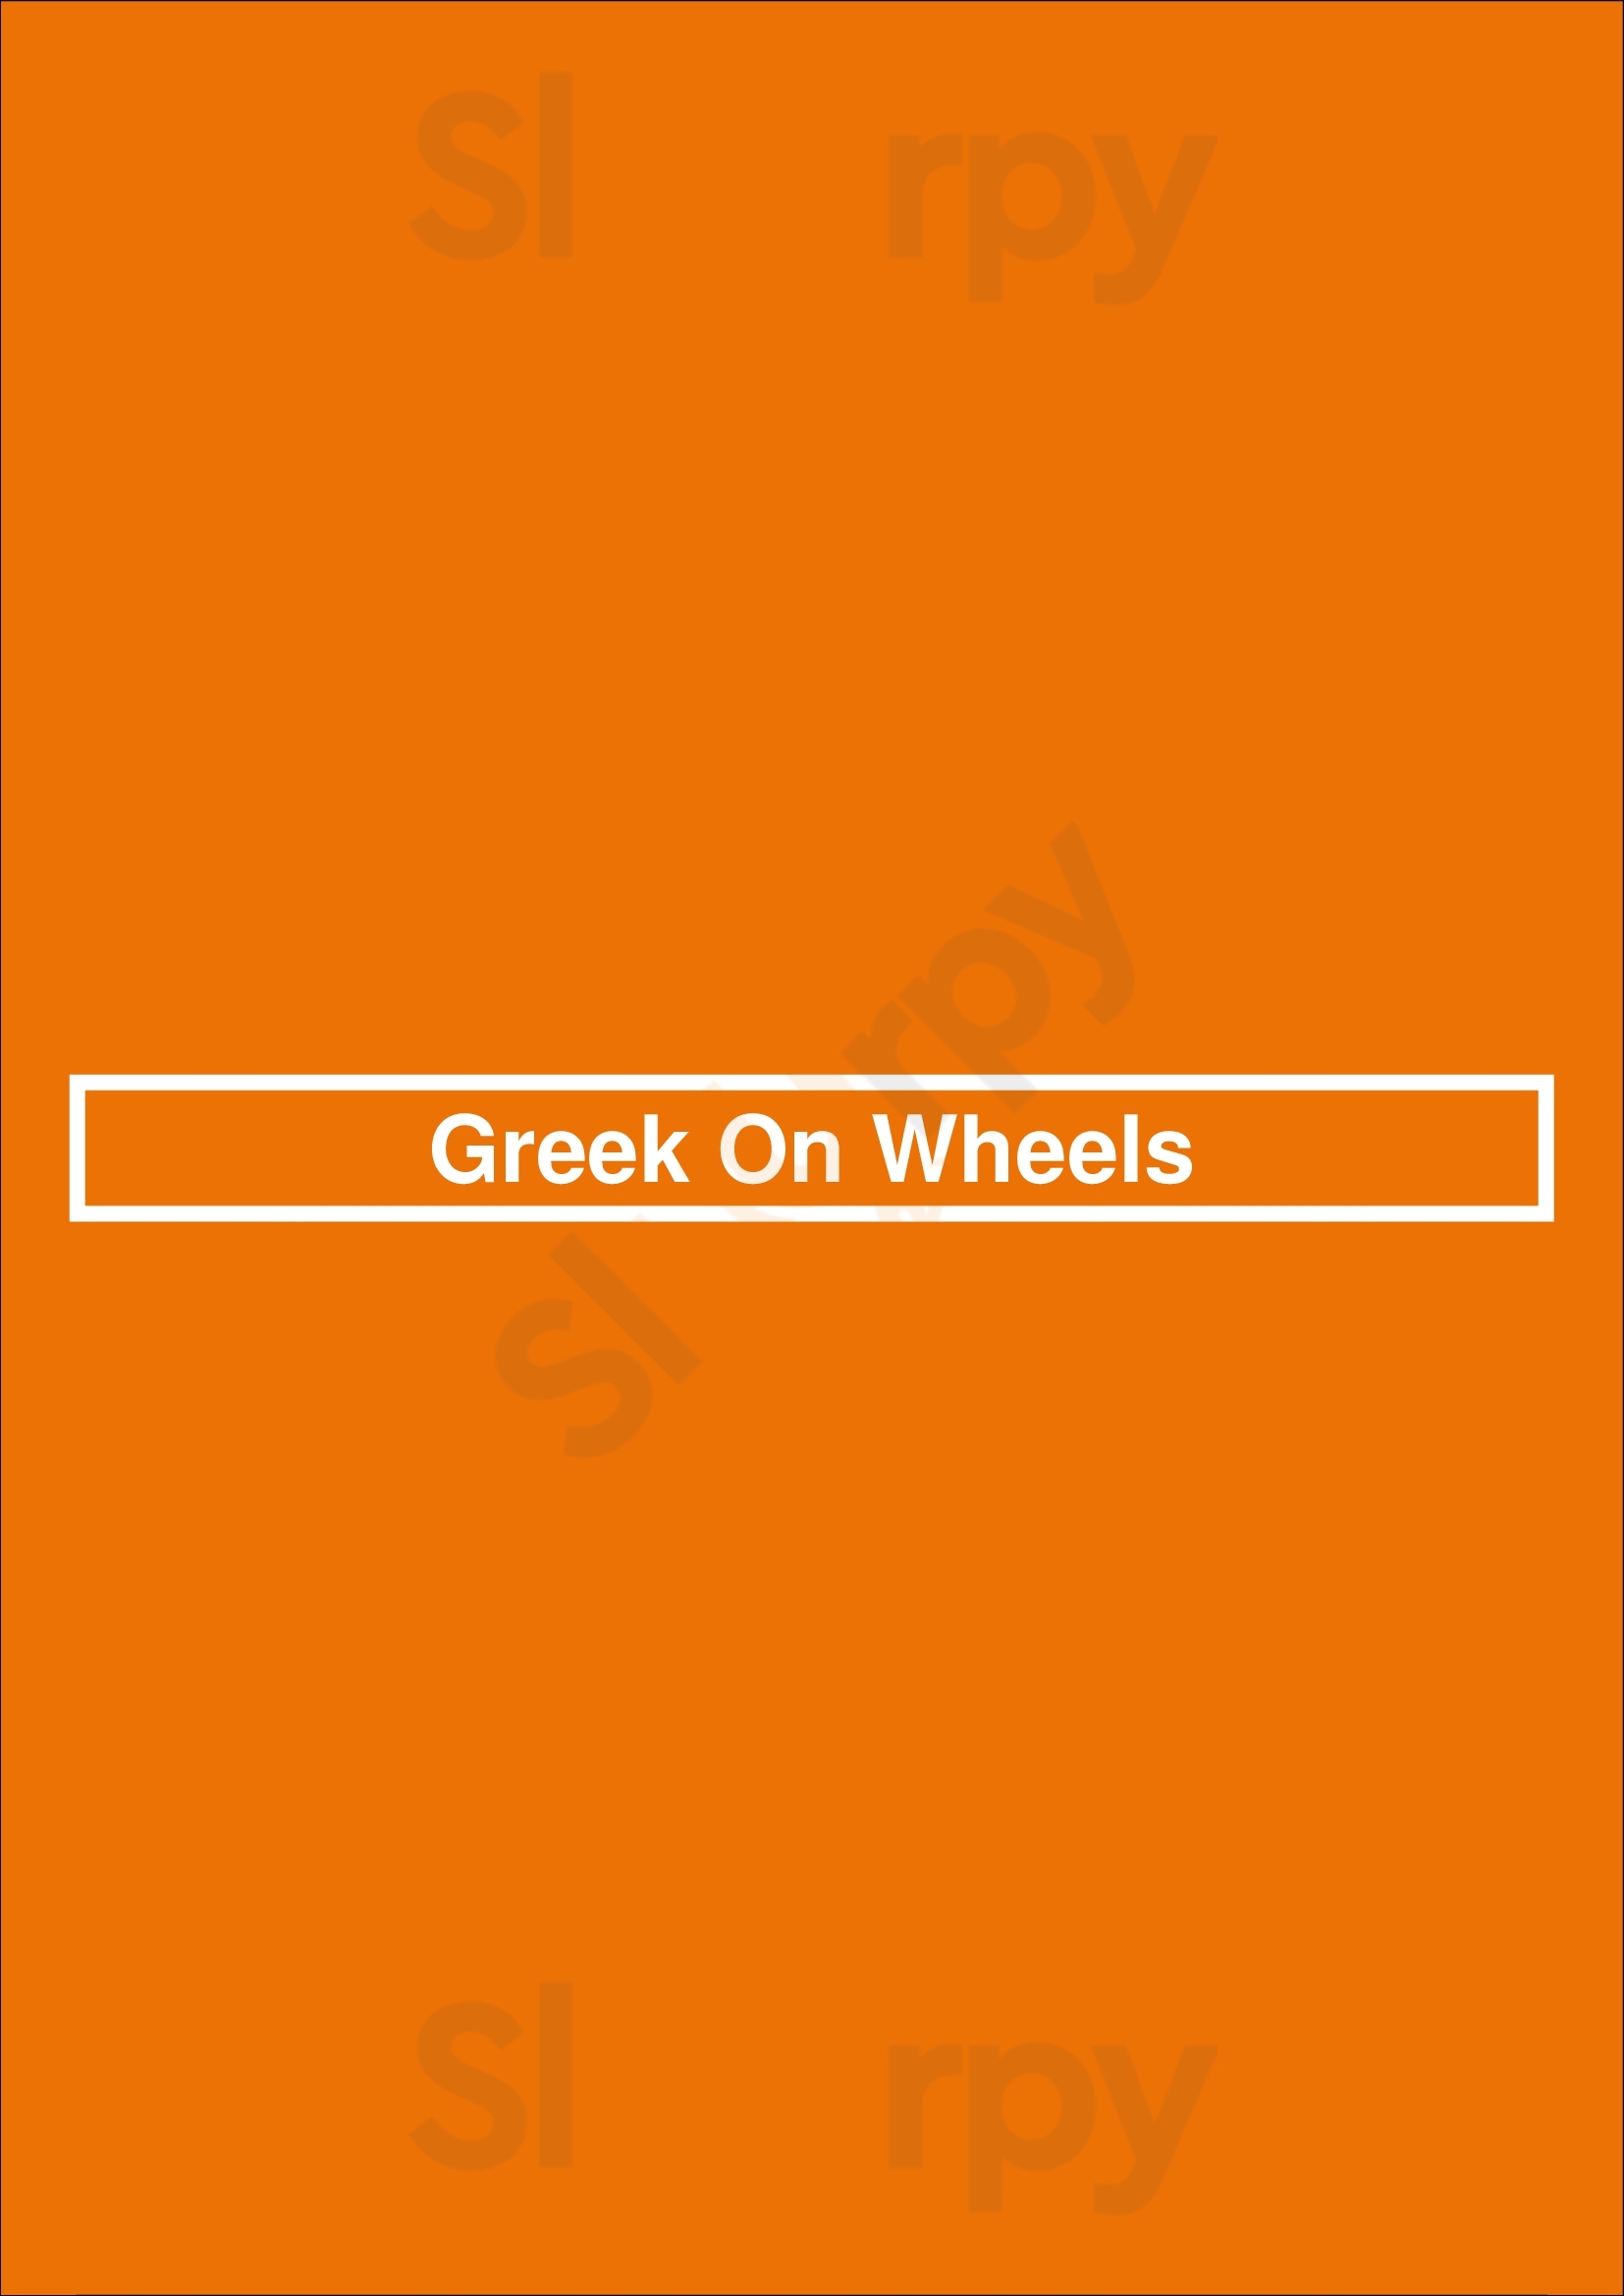 Greek On Wheels Ottawa Menu - 1